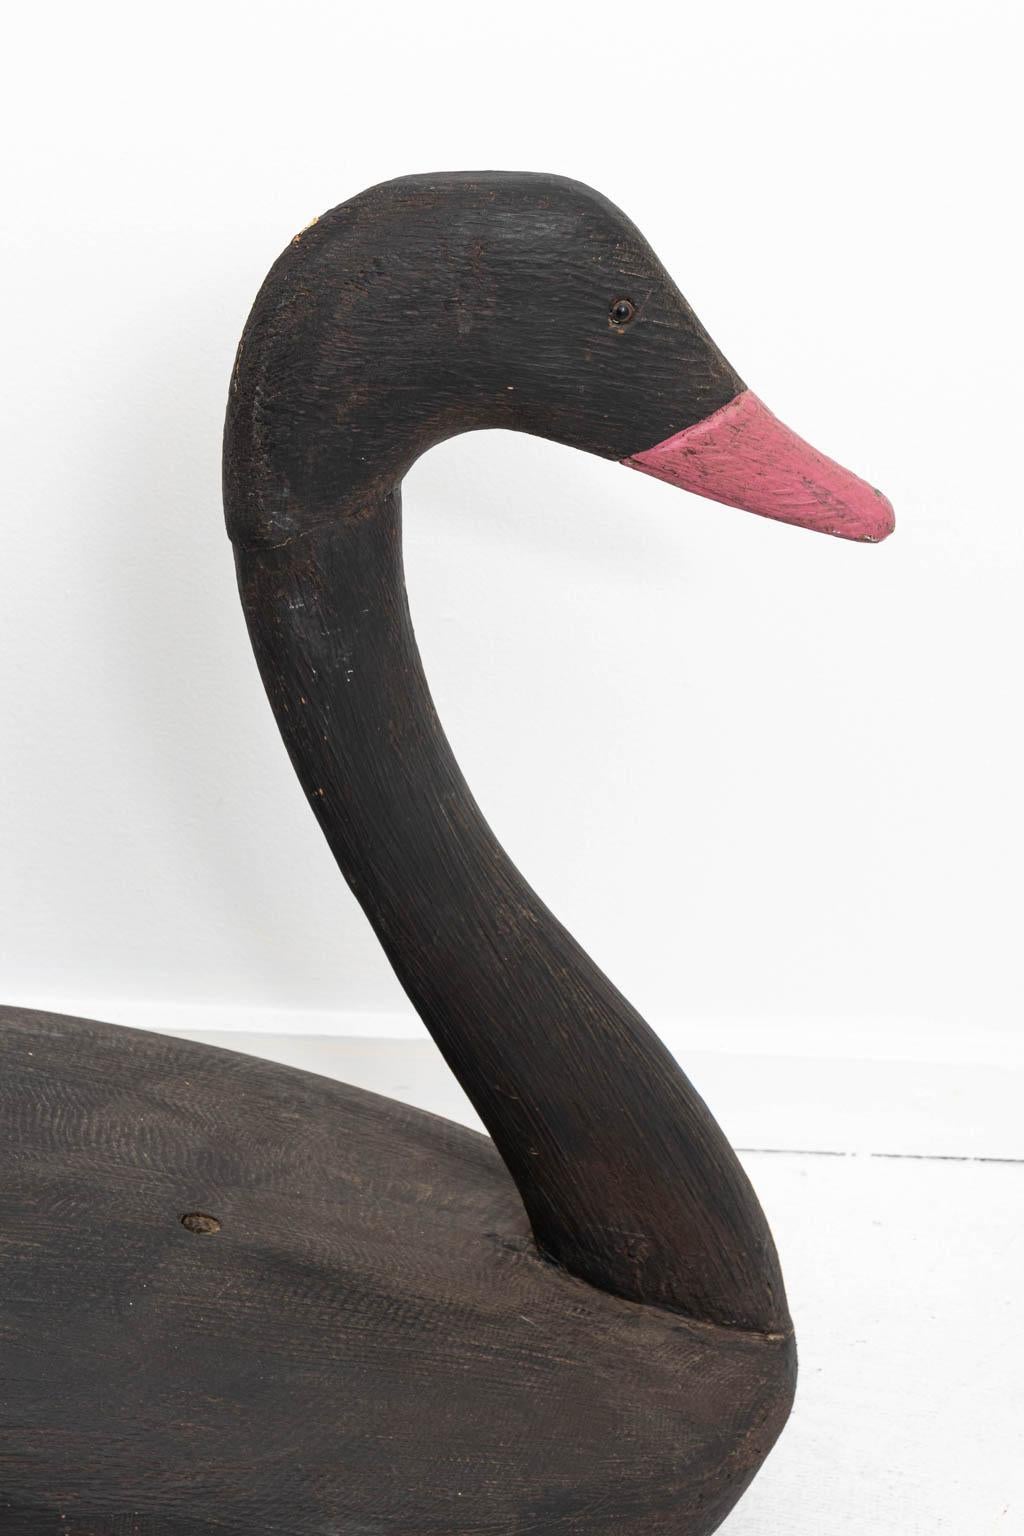 American Black Swan Decoy Folk Art